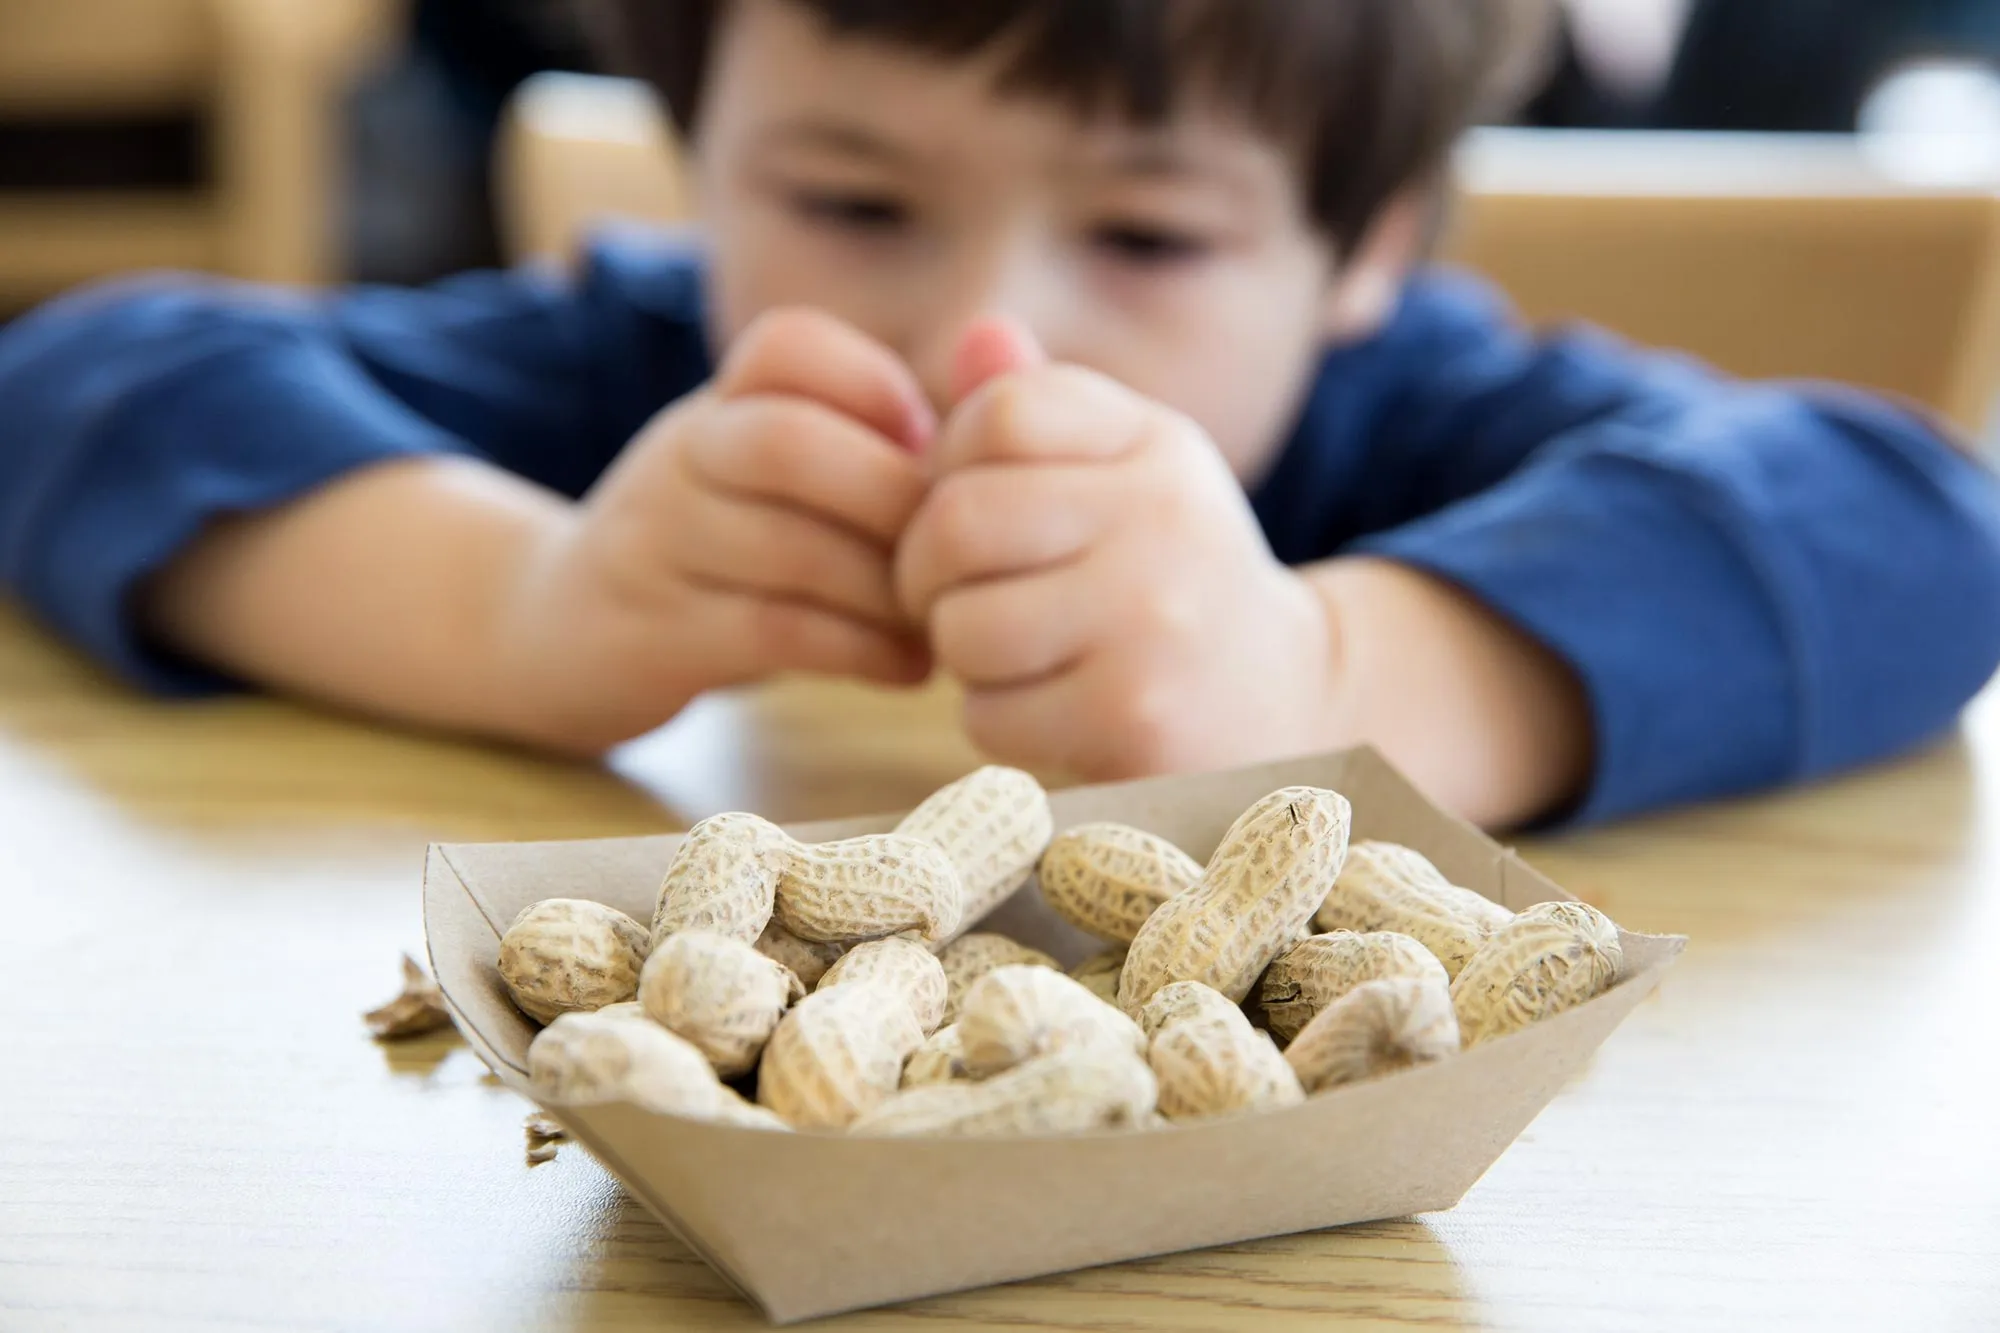 Un enfant mangeant des cacahuètes